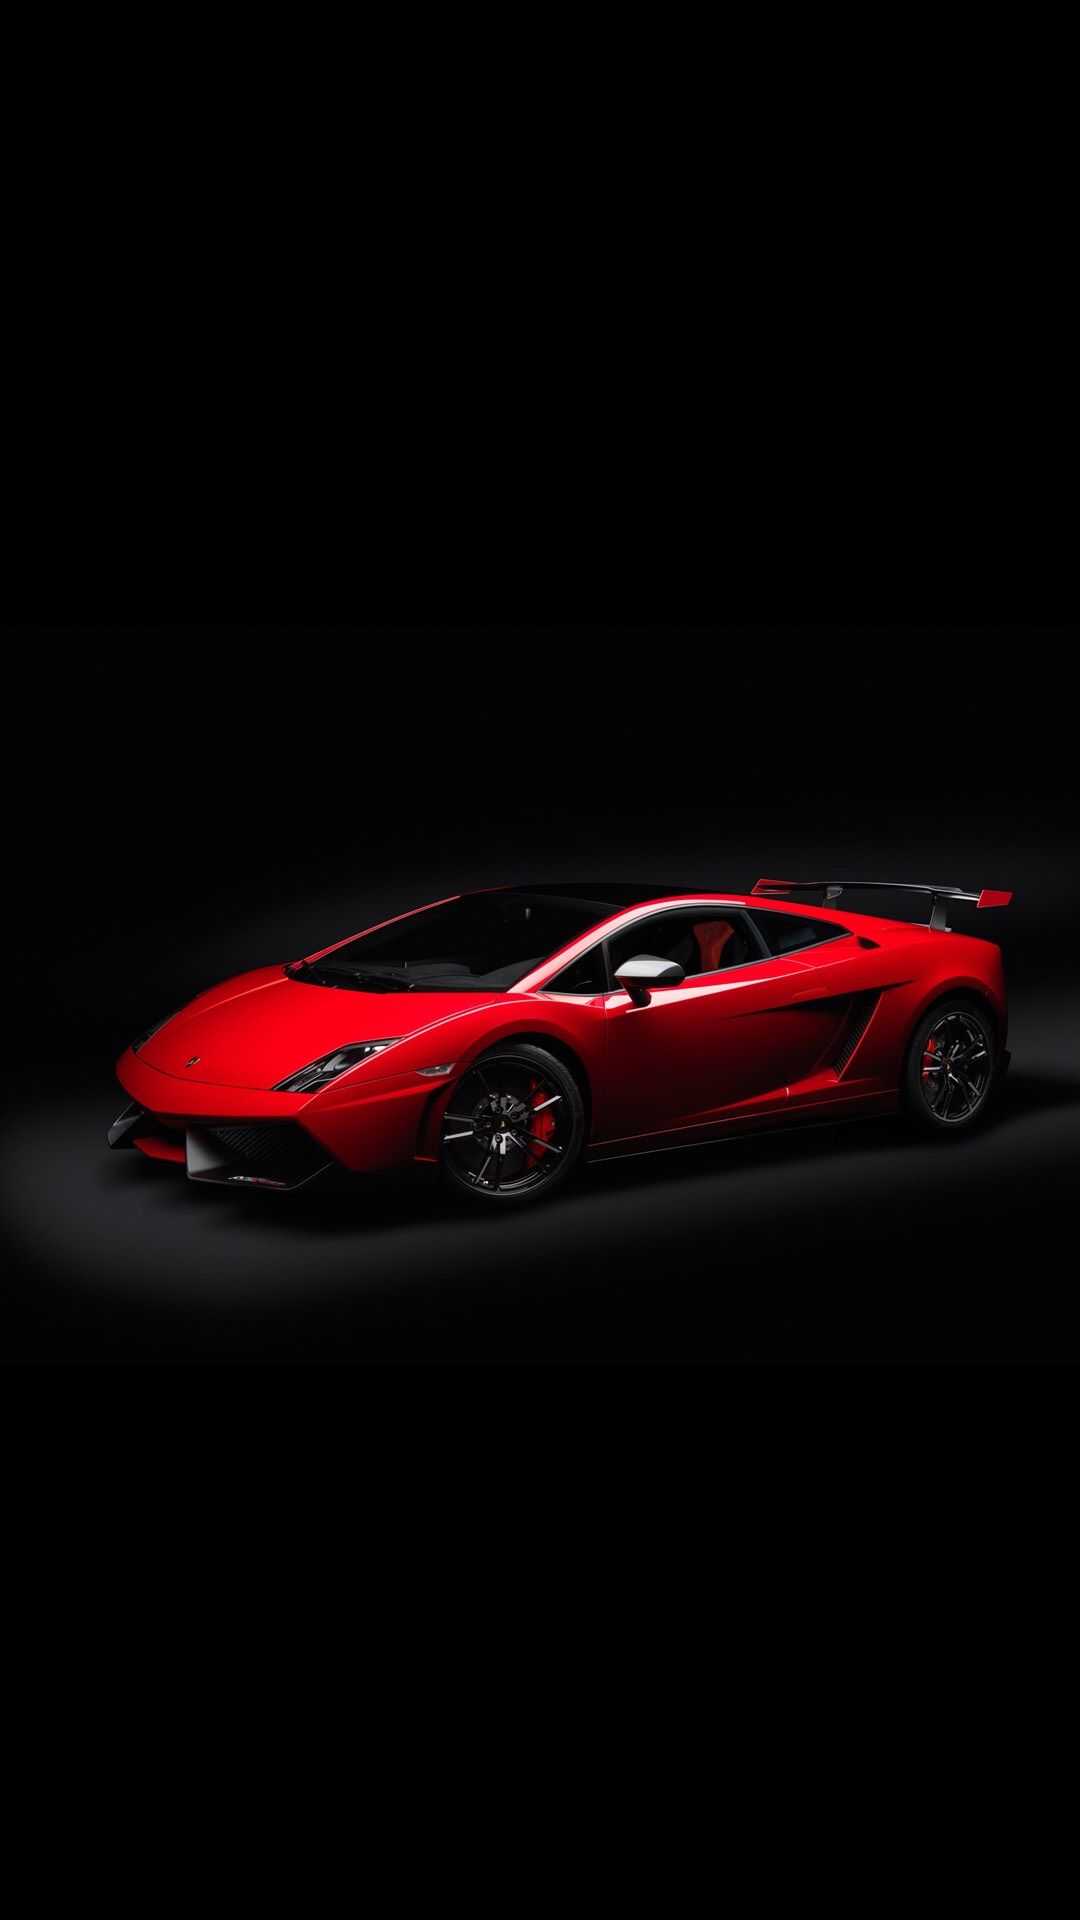 Lamborghini For Phone Wallpapers - Wallpaper Cave